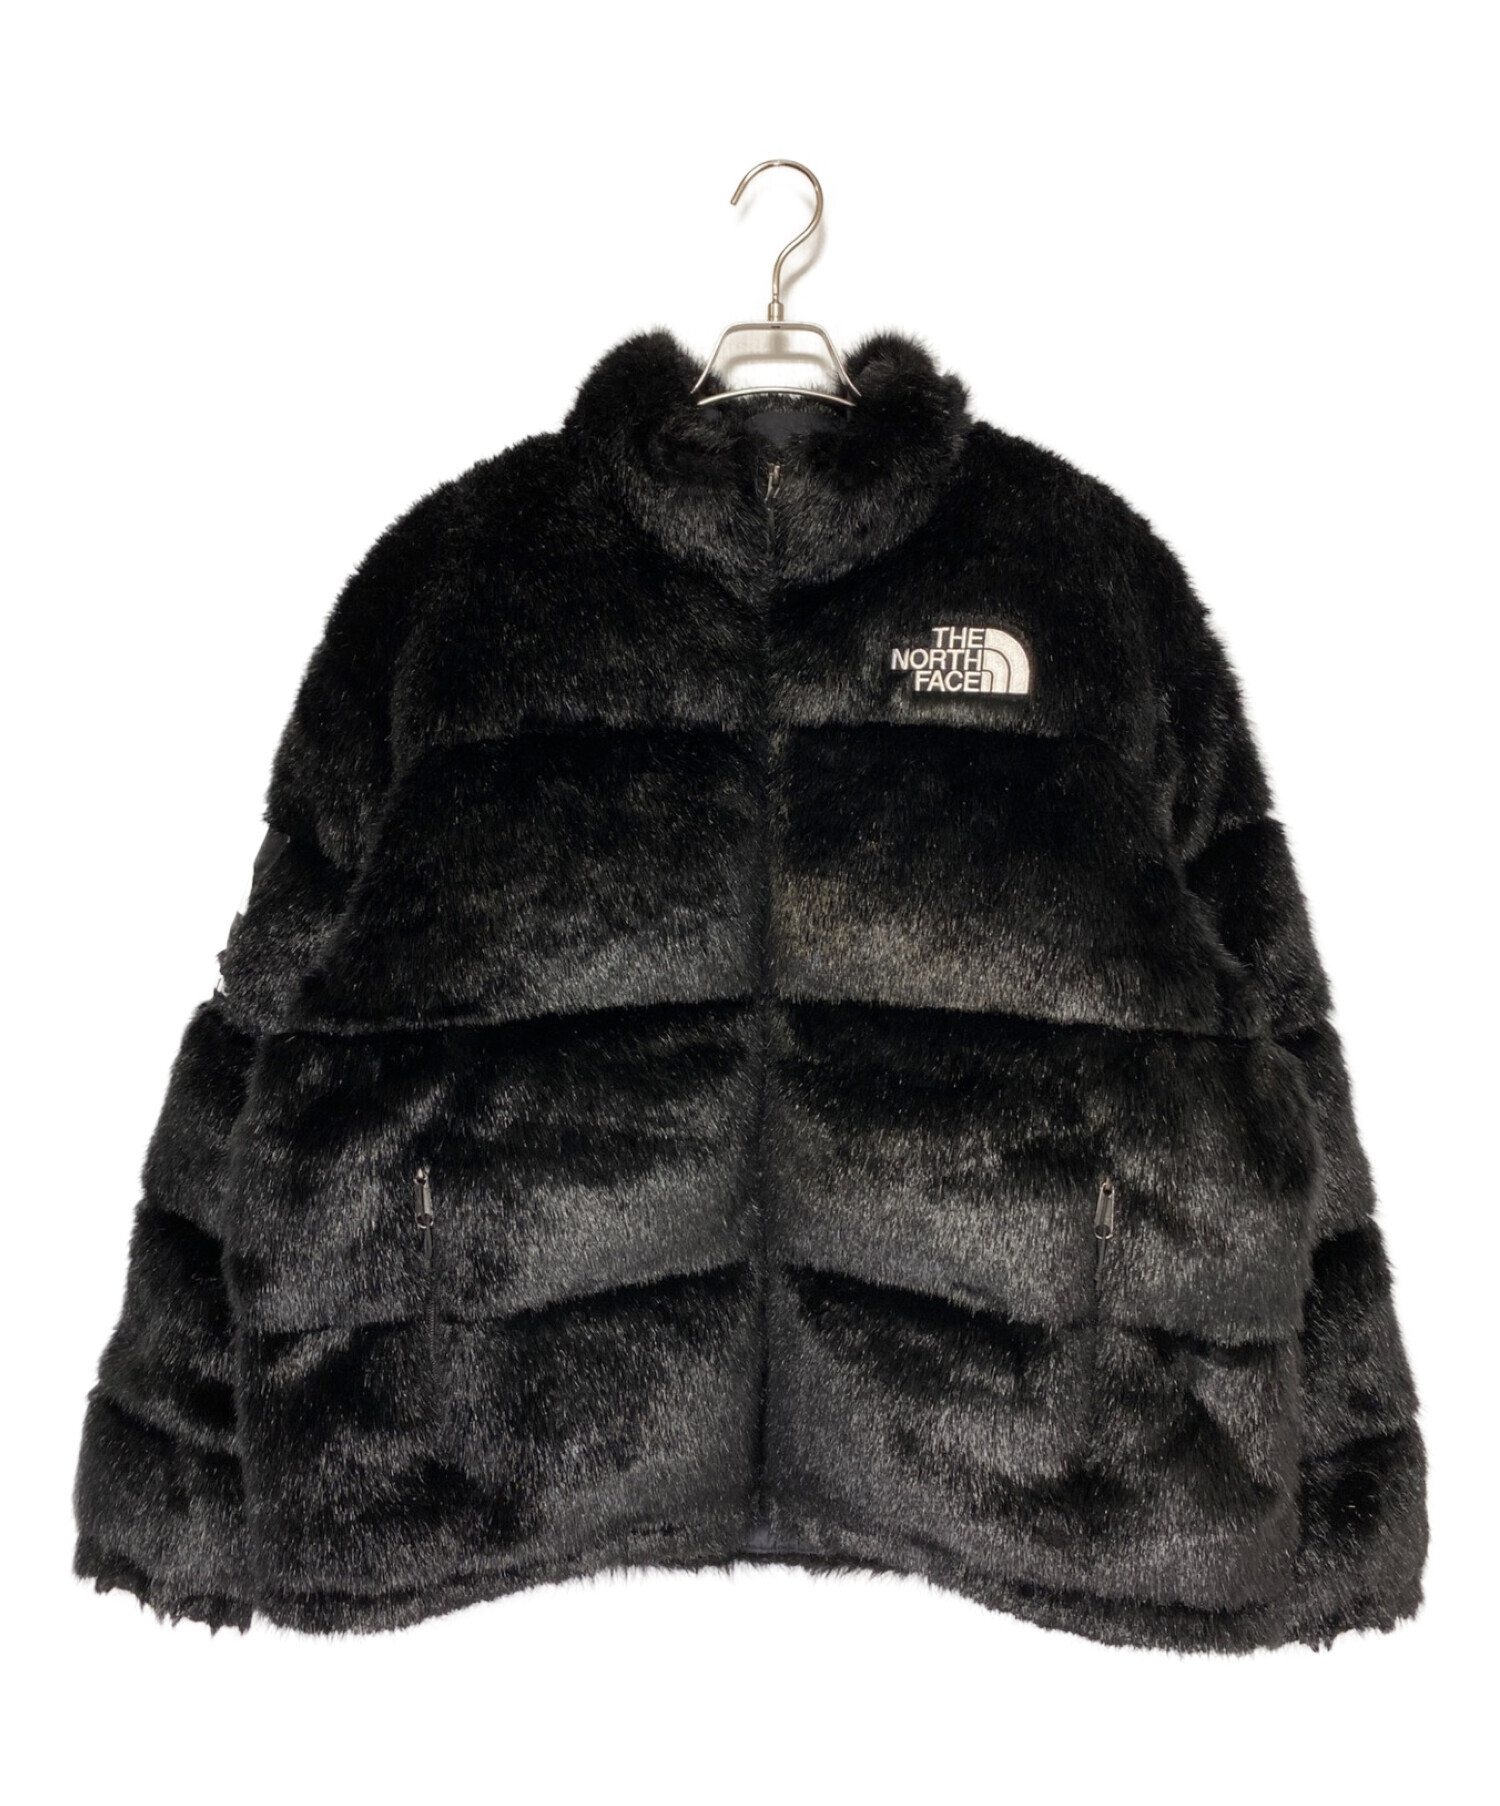 SUPREME (シュプリーム) THE NORTH FACE (ザ ノース フェイス) Faux Fur Nuptse Jacket ブラック  サイズ:L